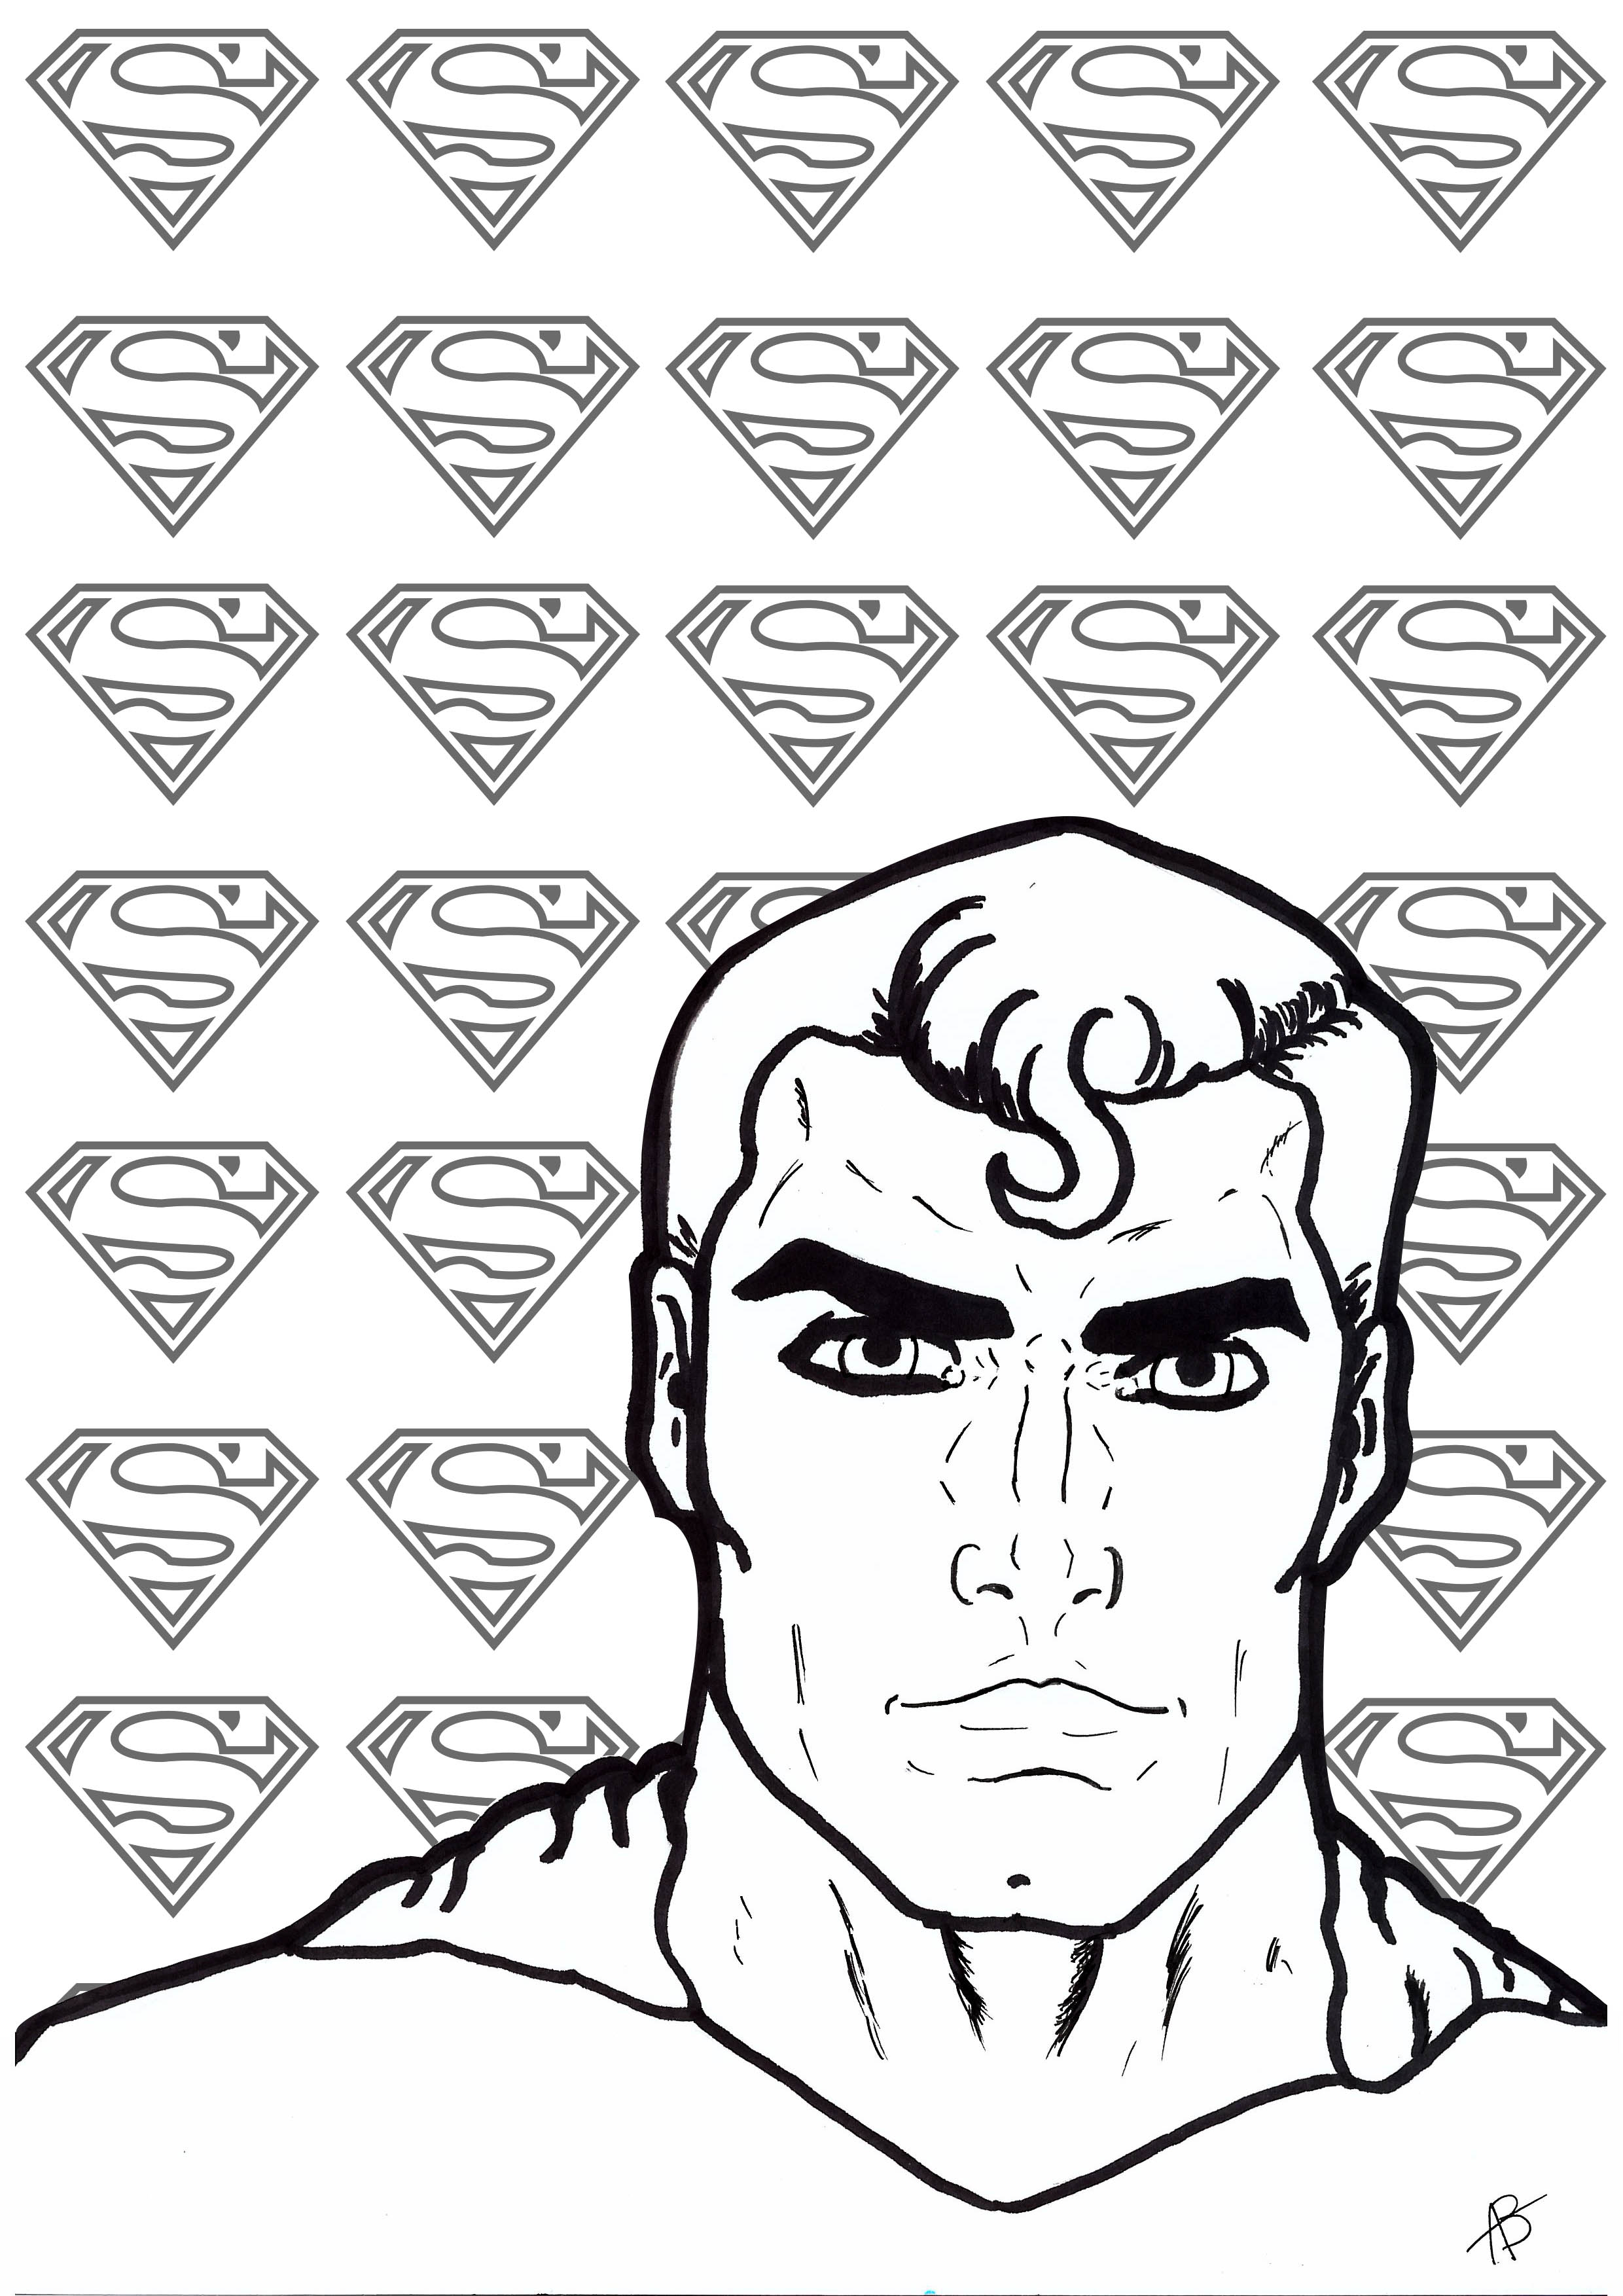 Colorear inspirado en el superhéroe Superman, Artista : Allan